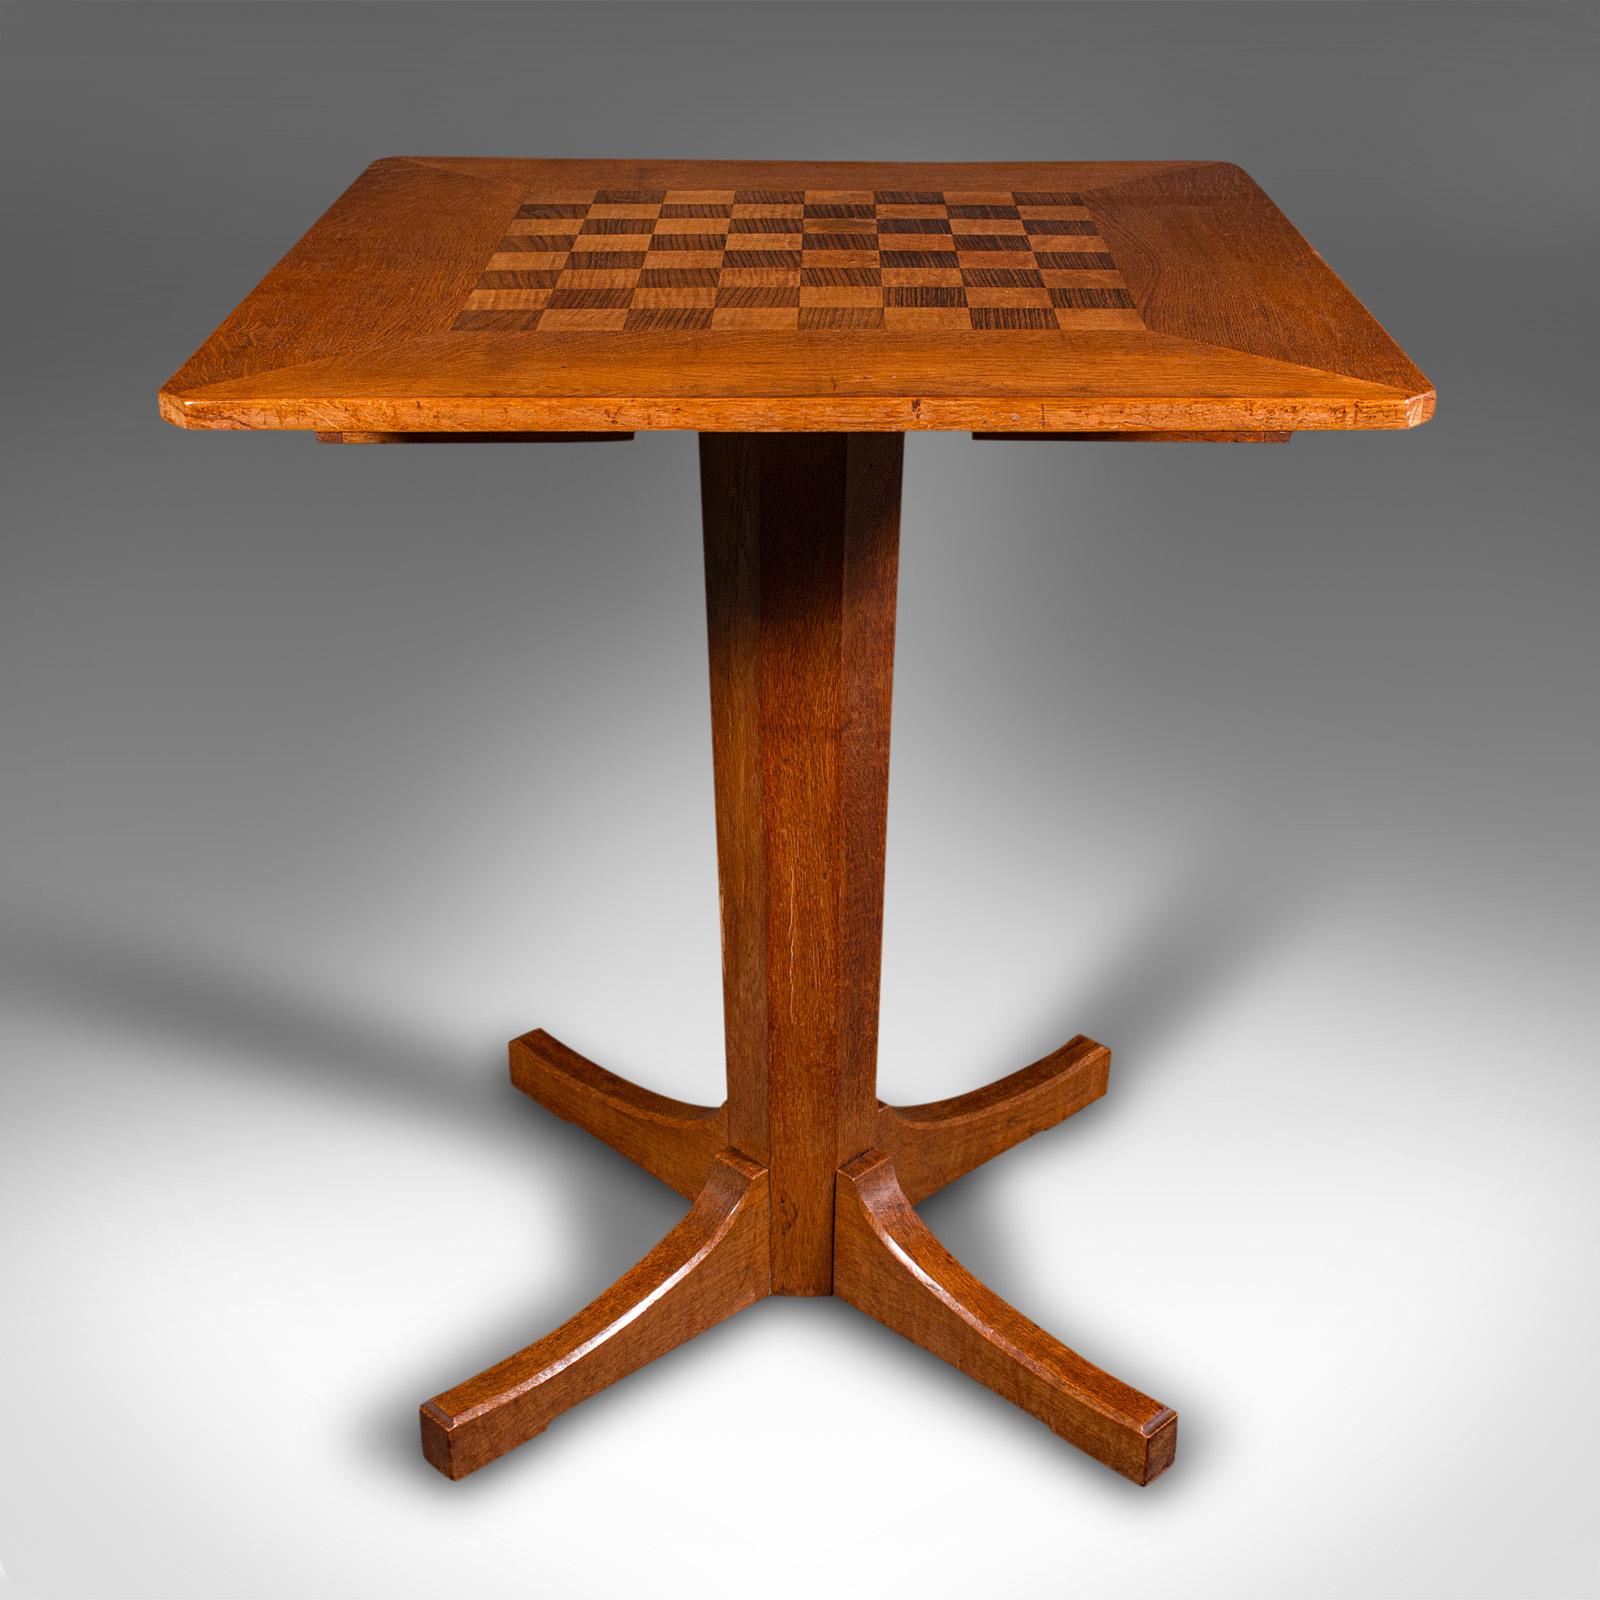 Dies ist ein Vintage-Schachtisch. Ein englischer Spieltisch aus Eiche, Satinholz und Nussbaum im Geschmack der Cotswold School, aus der Mitte des 20. Jahrhunderts, um 1950.

Wunderschön präsentierter Tisch mit dazugehörigem Schachspiel
Zeigt eine